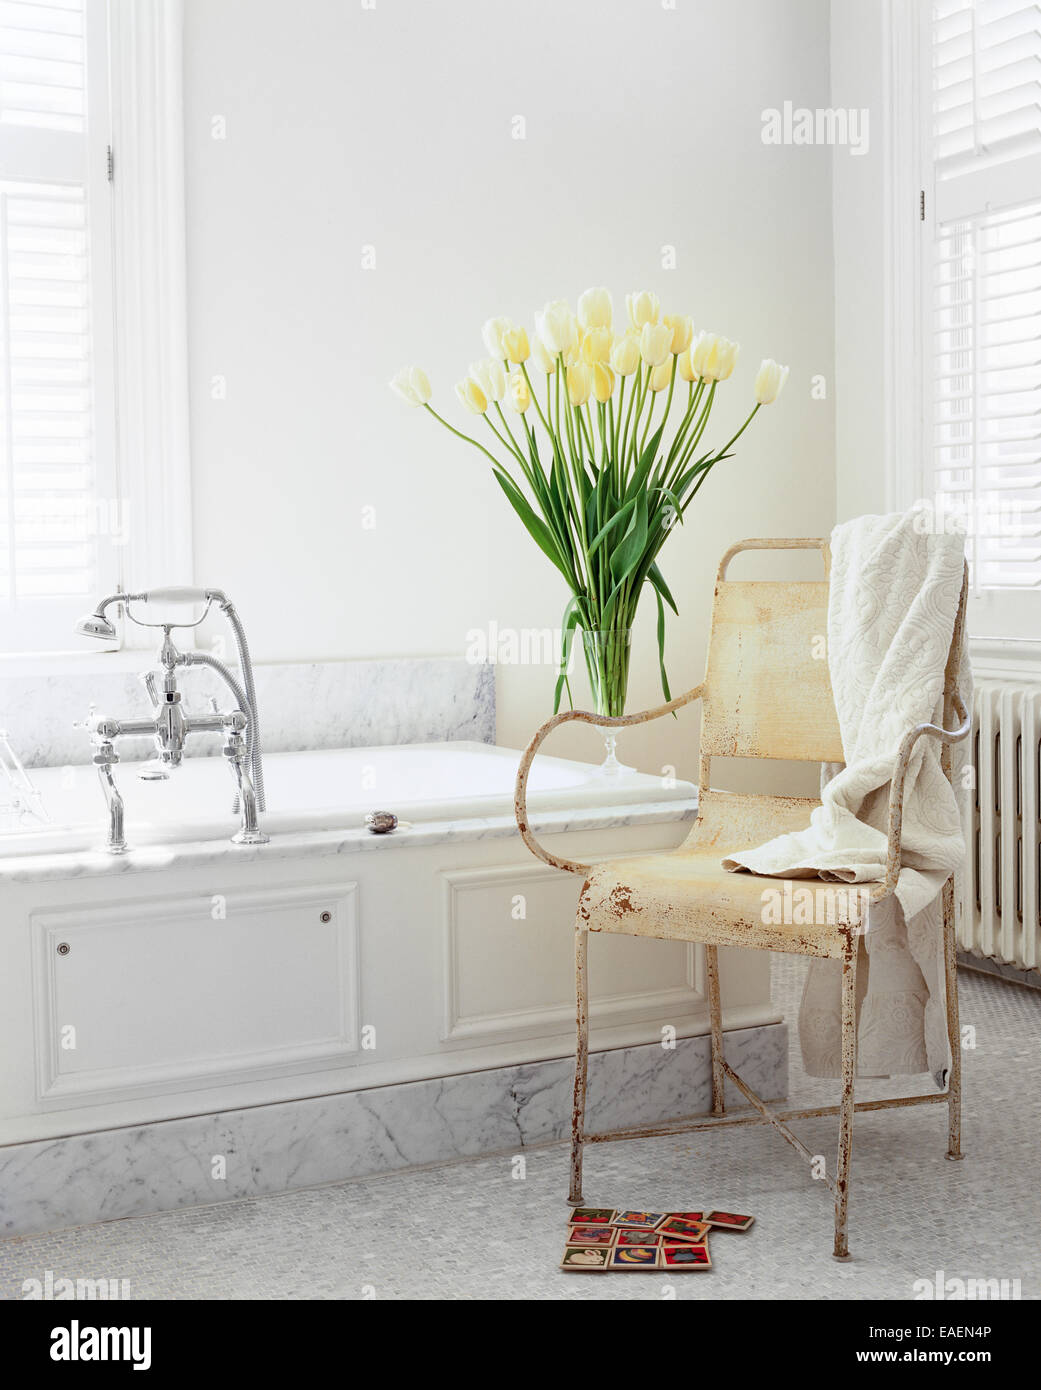 Shabby chic moderne salle de bains en marbre blanc, tulipes blanches et vieux fauteuil de jardin Banque D'Images